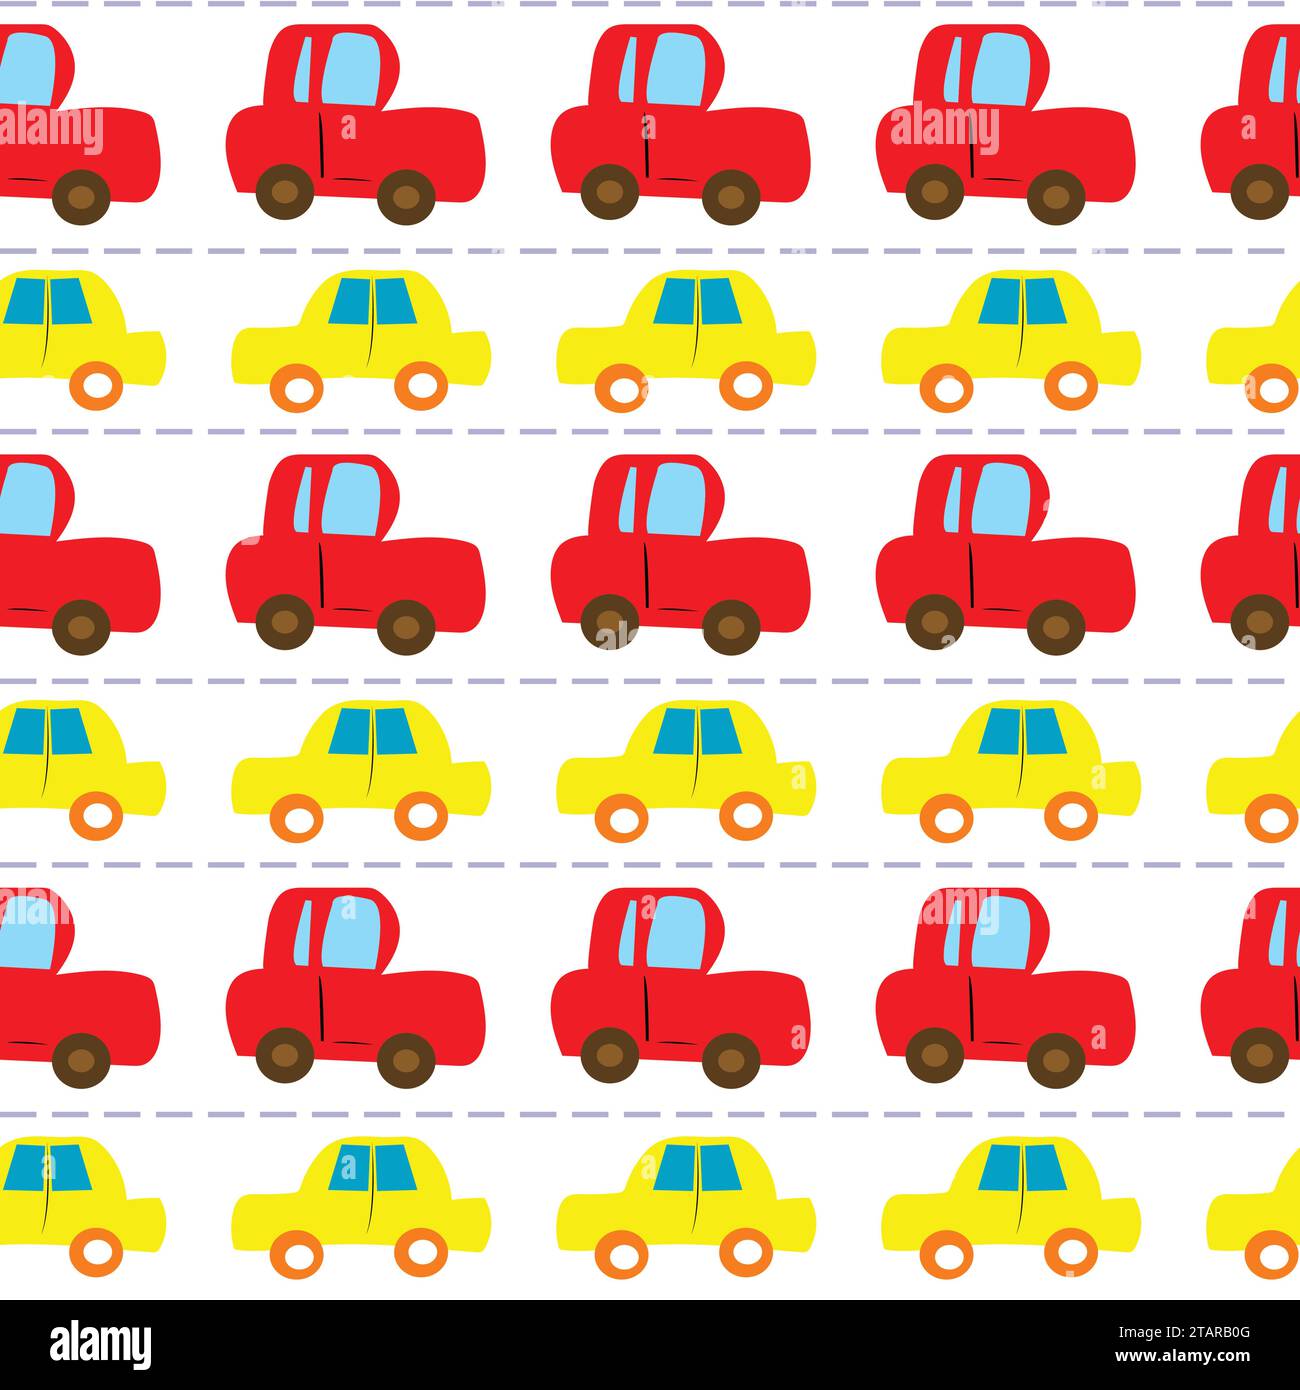 Kindliche Reihen von farbenfrohen Autos nahtlos Stock Vektor